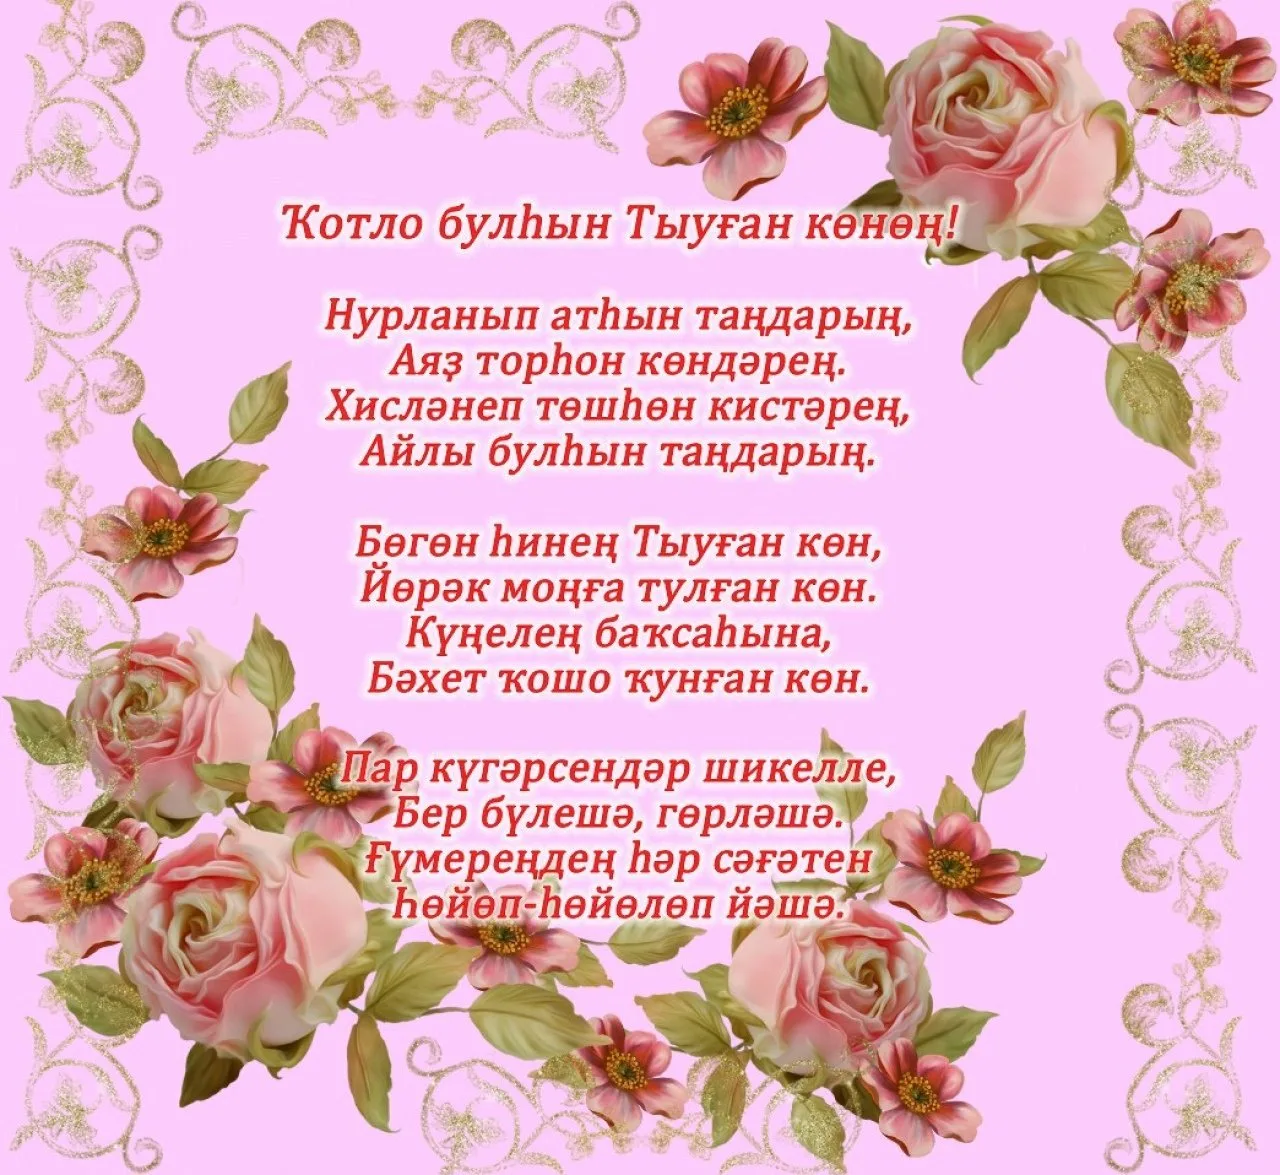 Фото Поздравления с Новым годом на татарском с переводом на русский язык #16